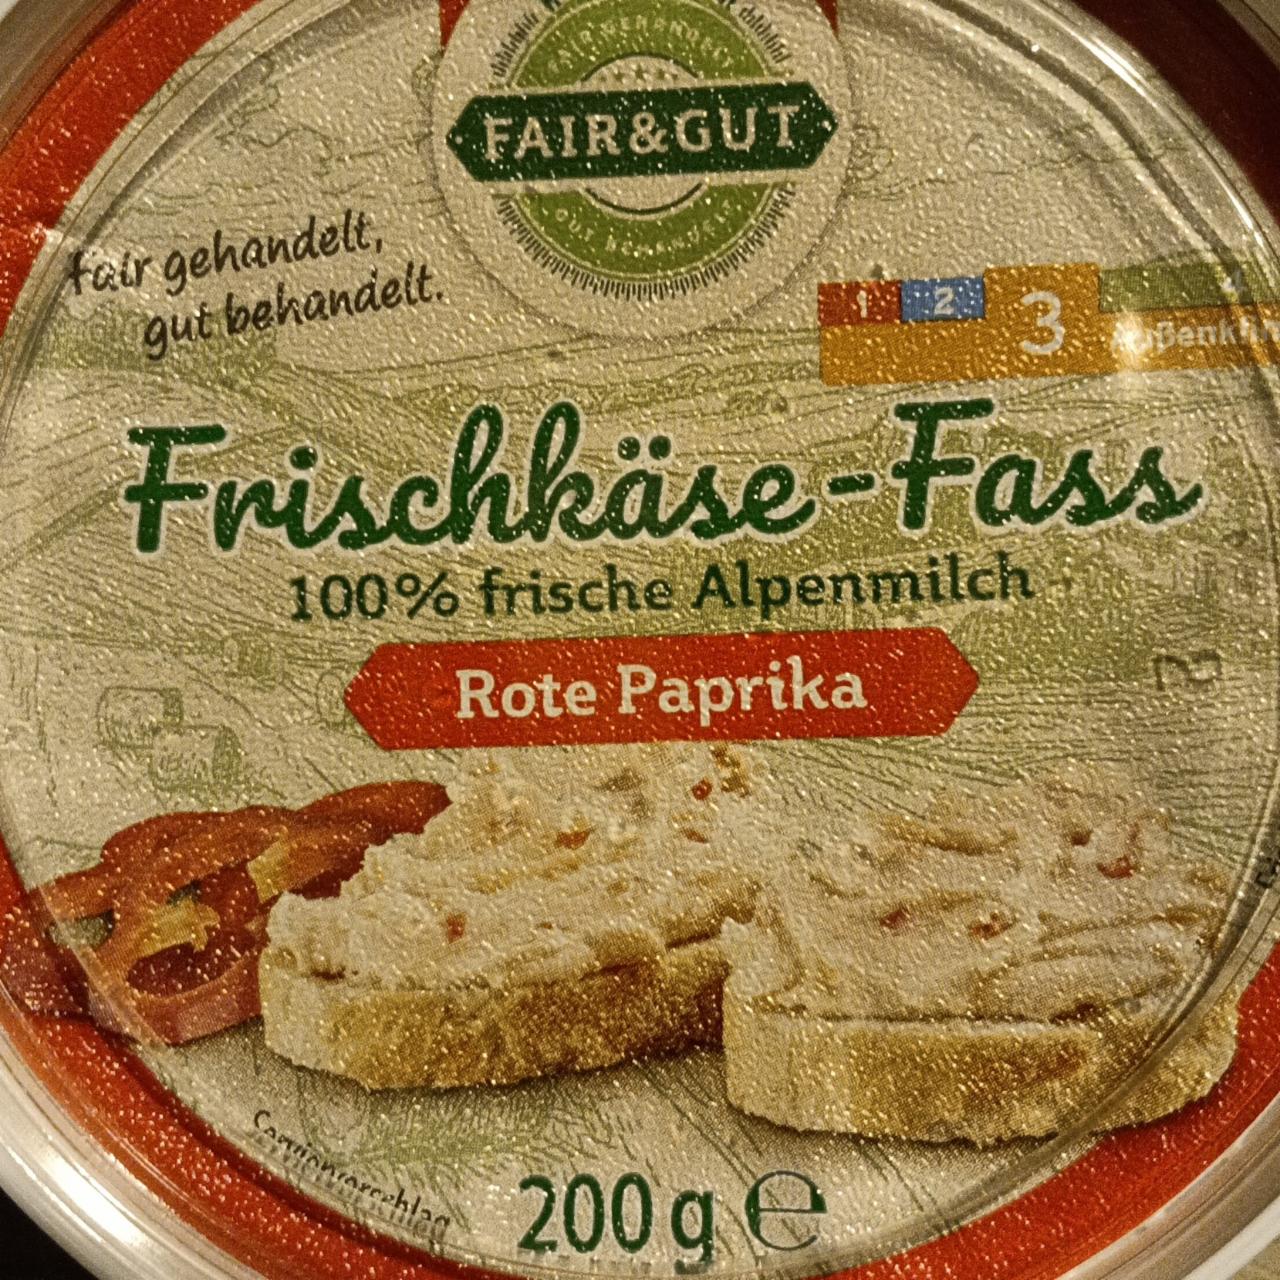 Фото - Frischkäse-Fass rote paprika Fair & Gut